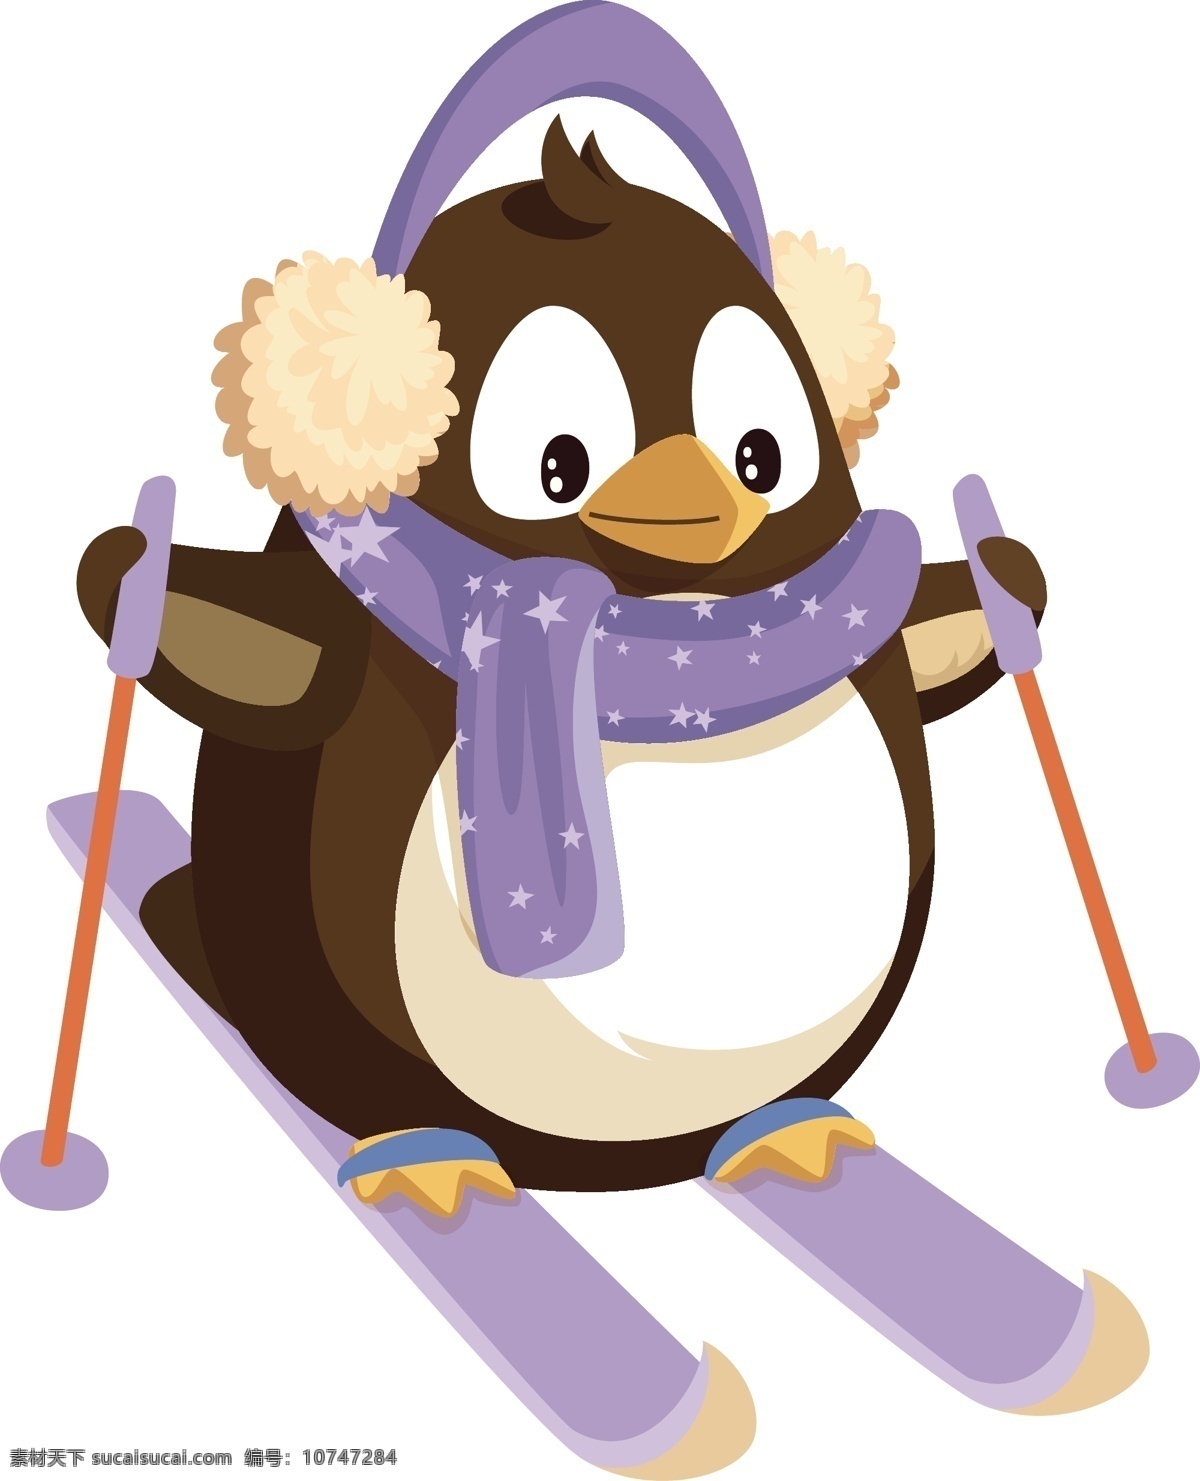 圣诞节 企鹅 滑雪 滑雪企鹅图片 滑雪企鹅 雪橇 下雪场景 冰天雪地 可爱企鹅 扁平化企鹅 滑雪板 滑板 快乐 卡通设计